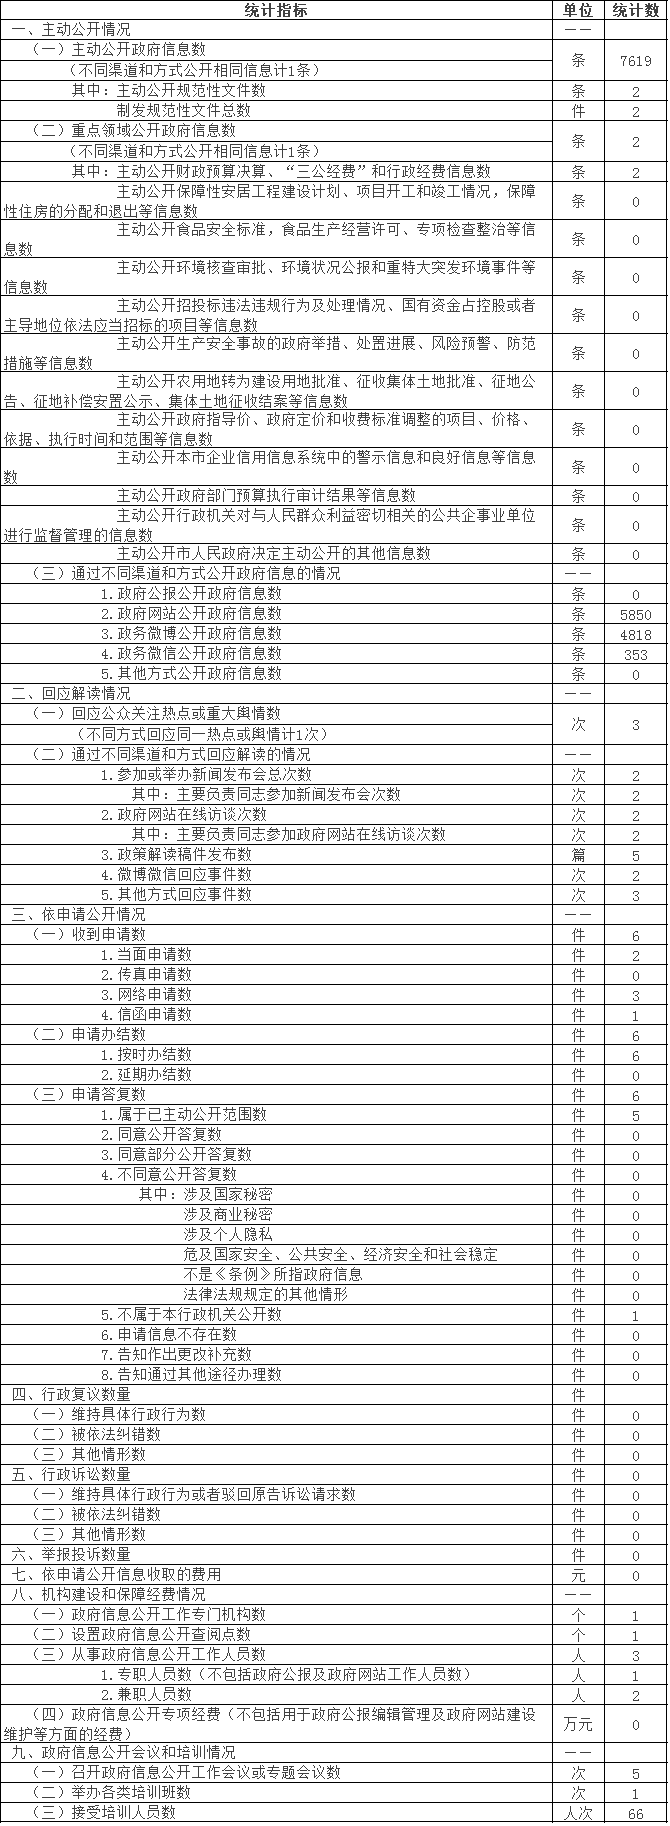 北京市文化局政府信息公开情况统计表